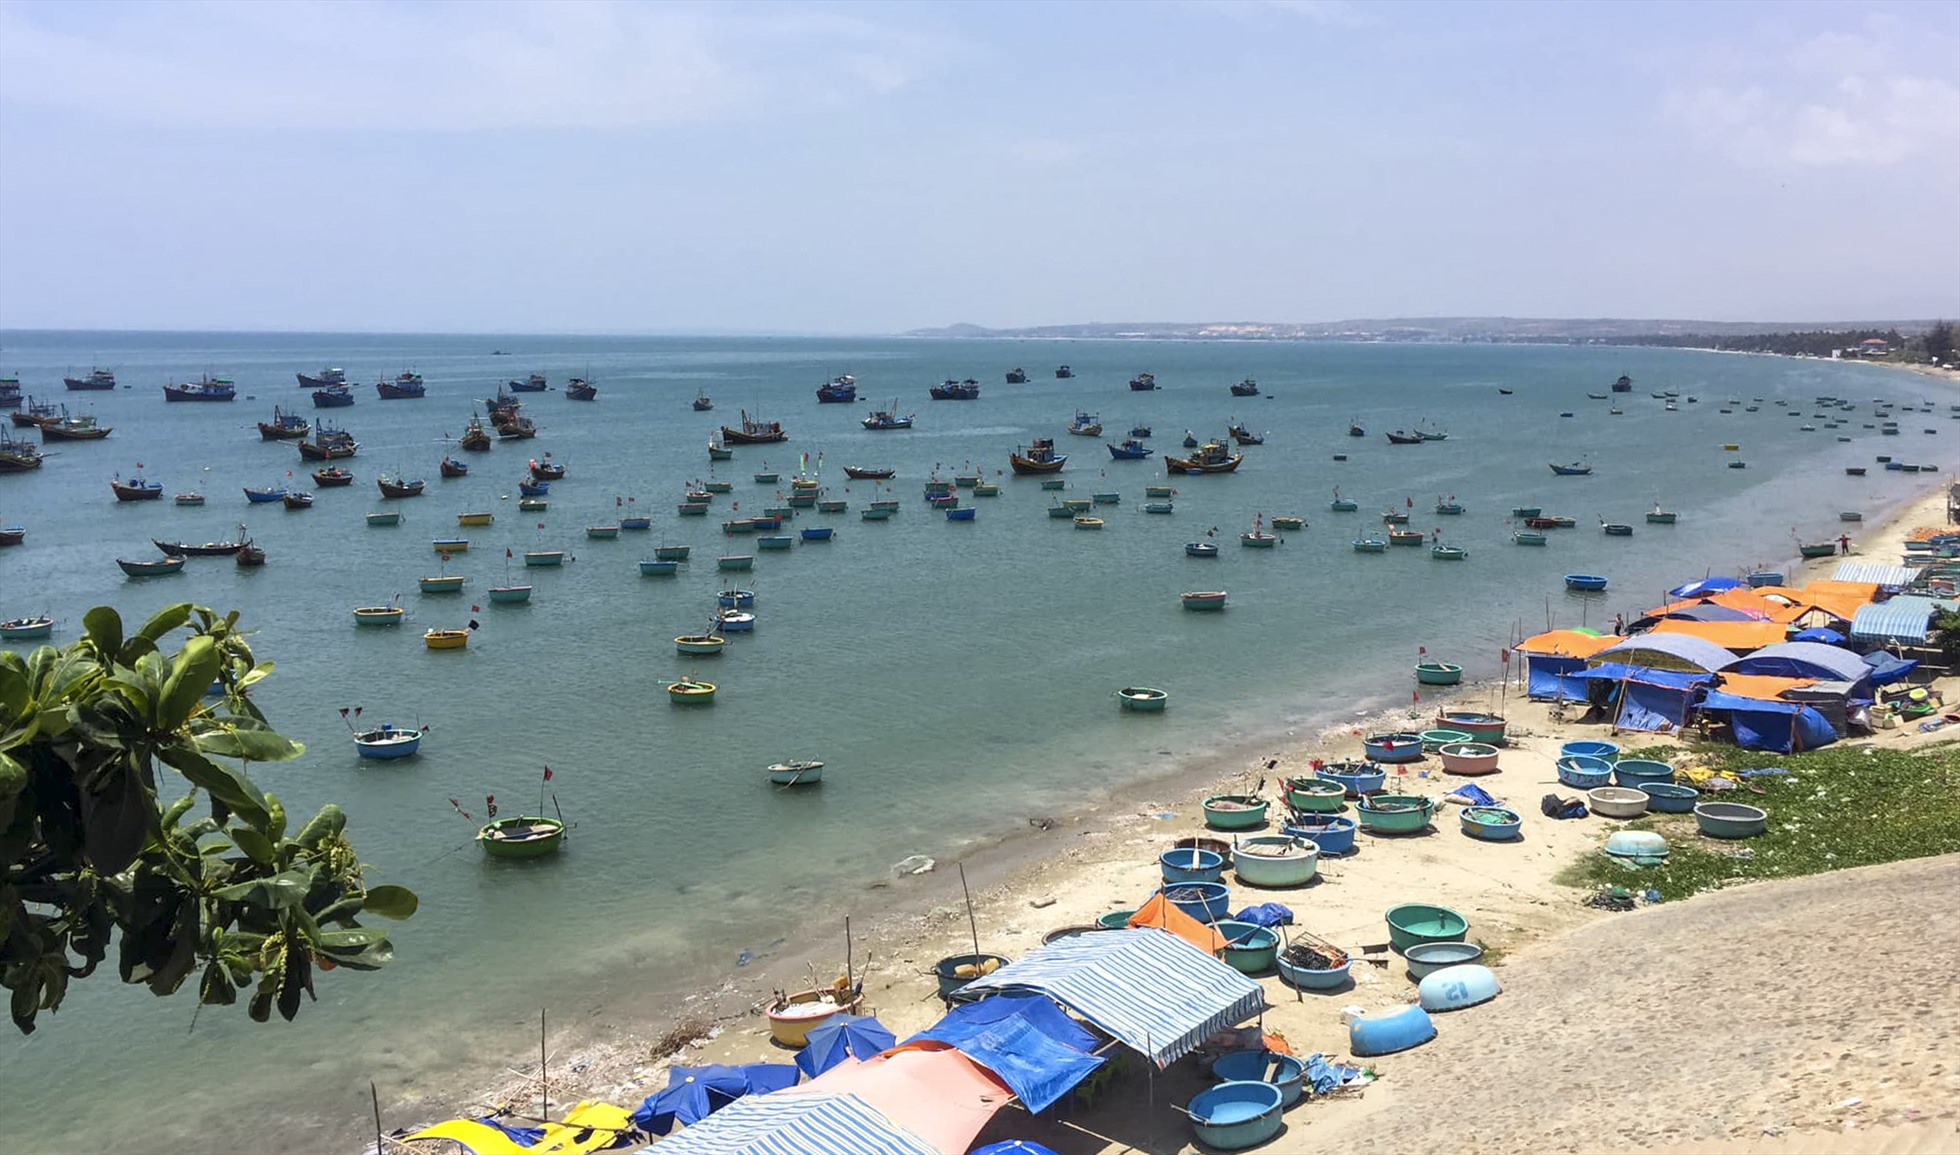 Các lều, bạt tự phát bán hải sản ngay ở bờ biển của Làng chài Mũi Né. Ảnh: Duy Tuấn